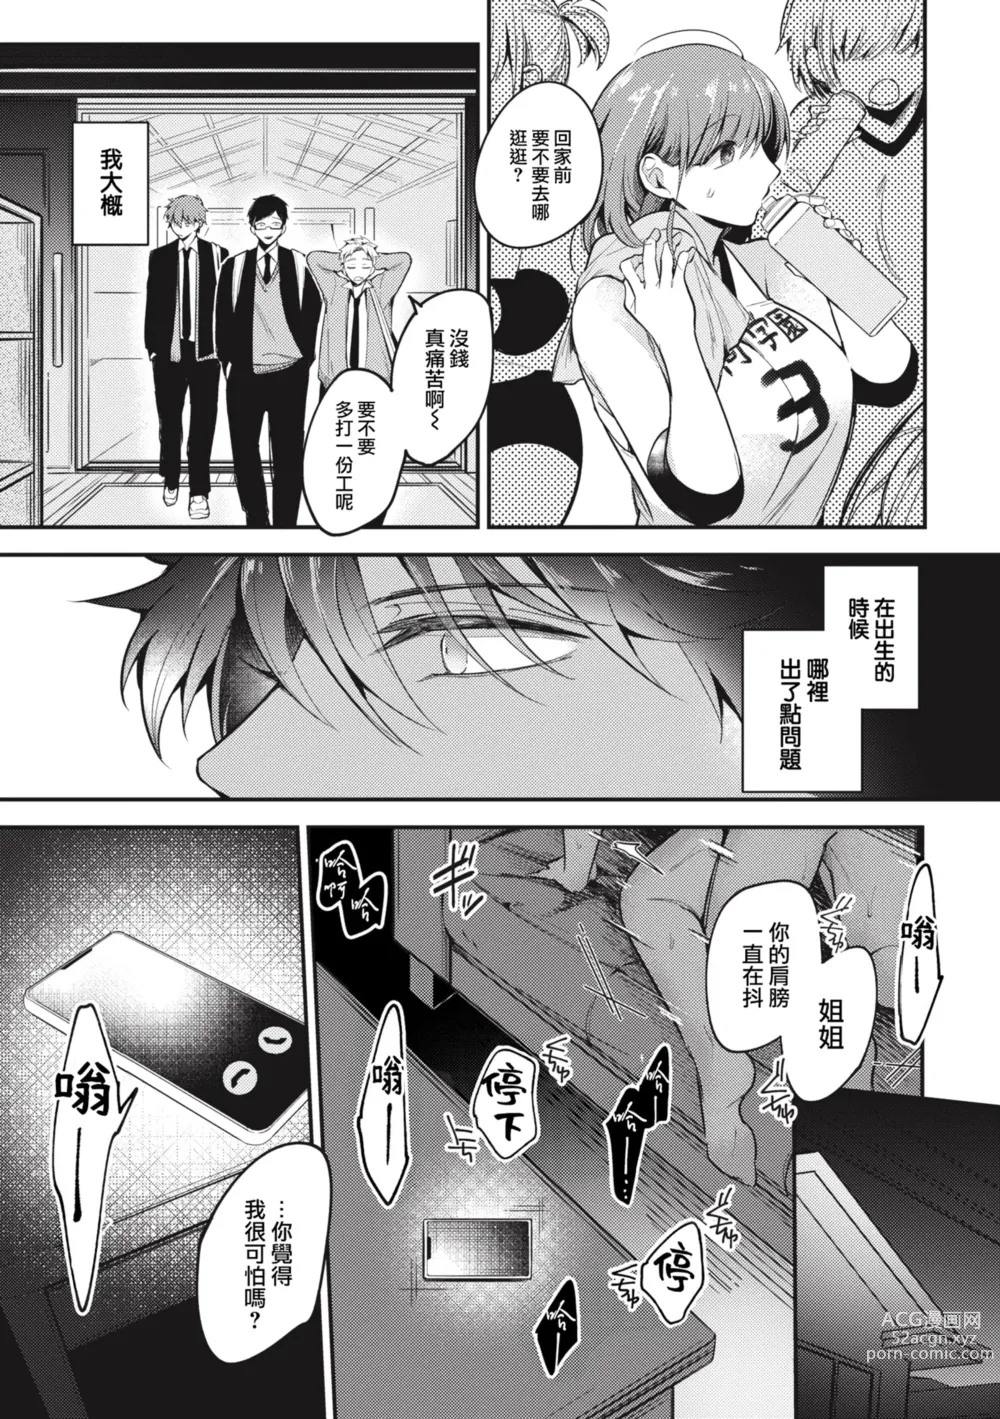 Page 5 of manga Tairo naki netsu + Gojitsutan